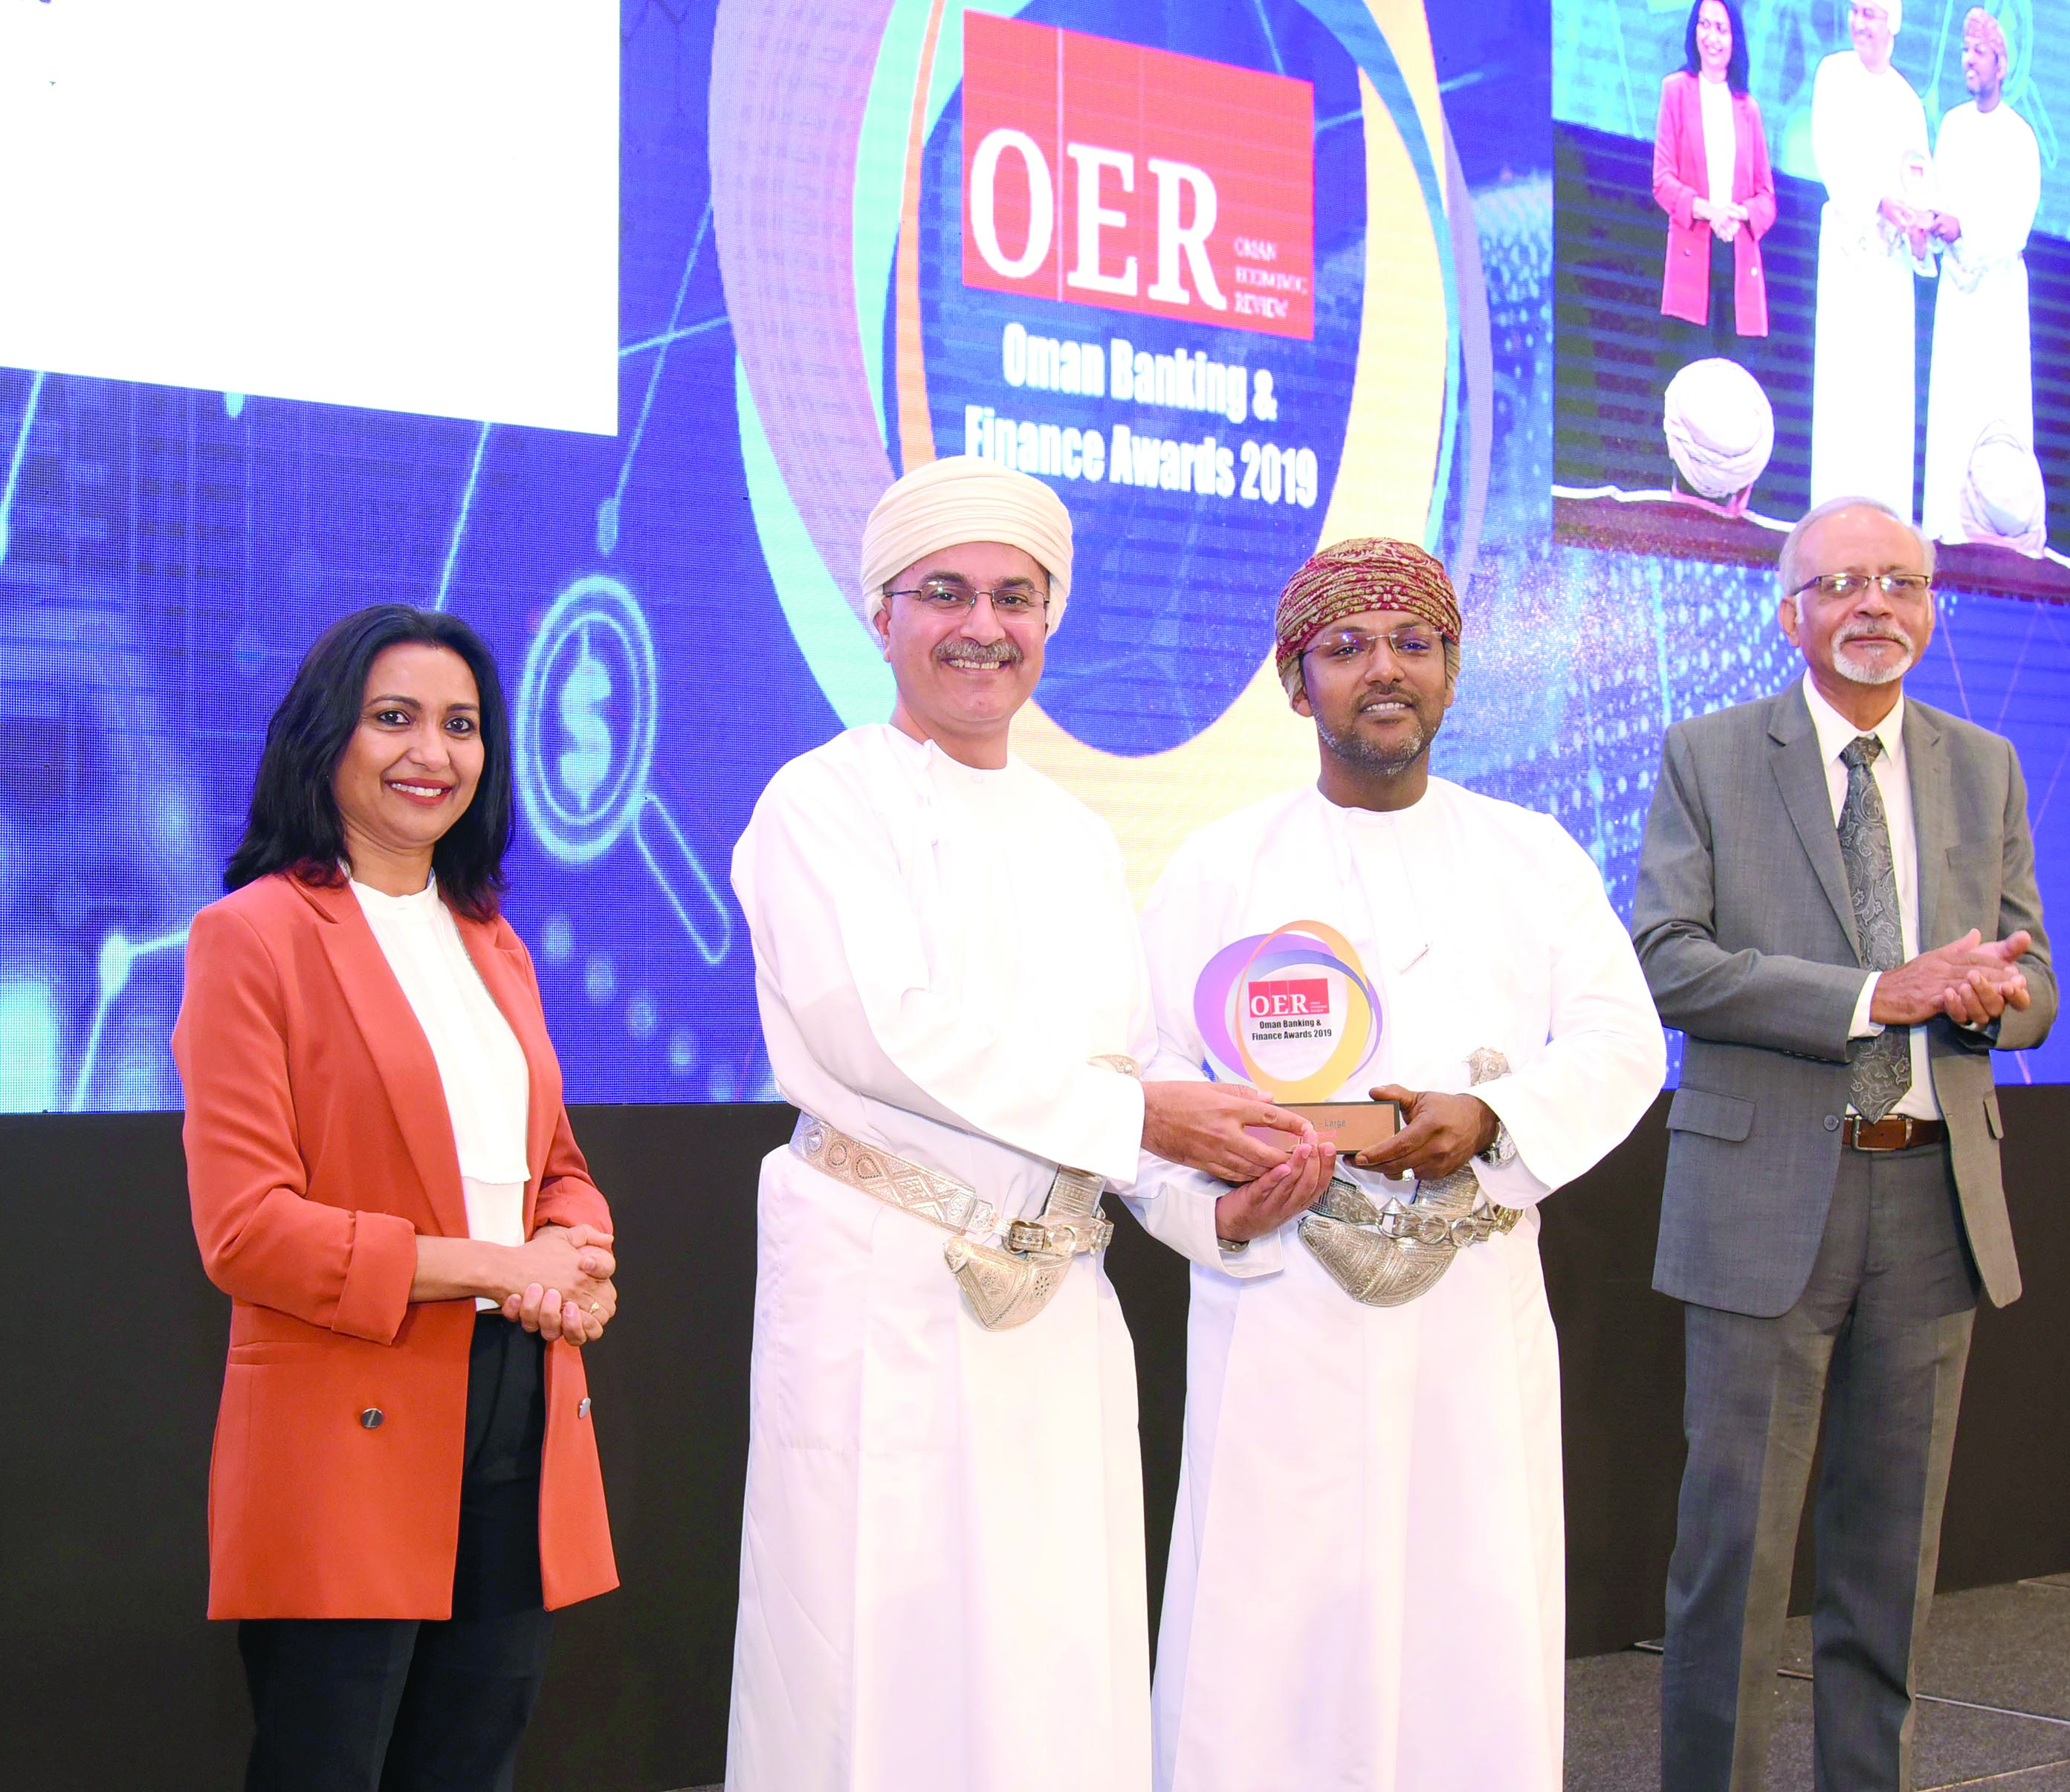 بنك مسقط يفوز بجائزة أفضل بنك بالسلطنة من مؤسسة OER